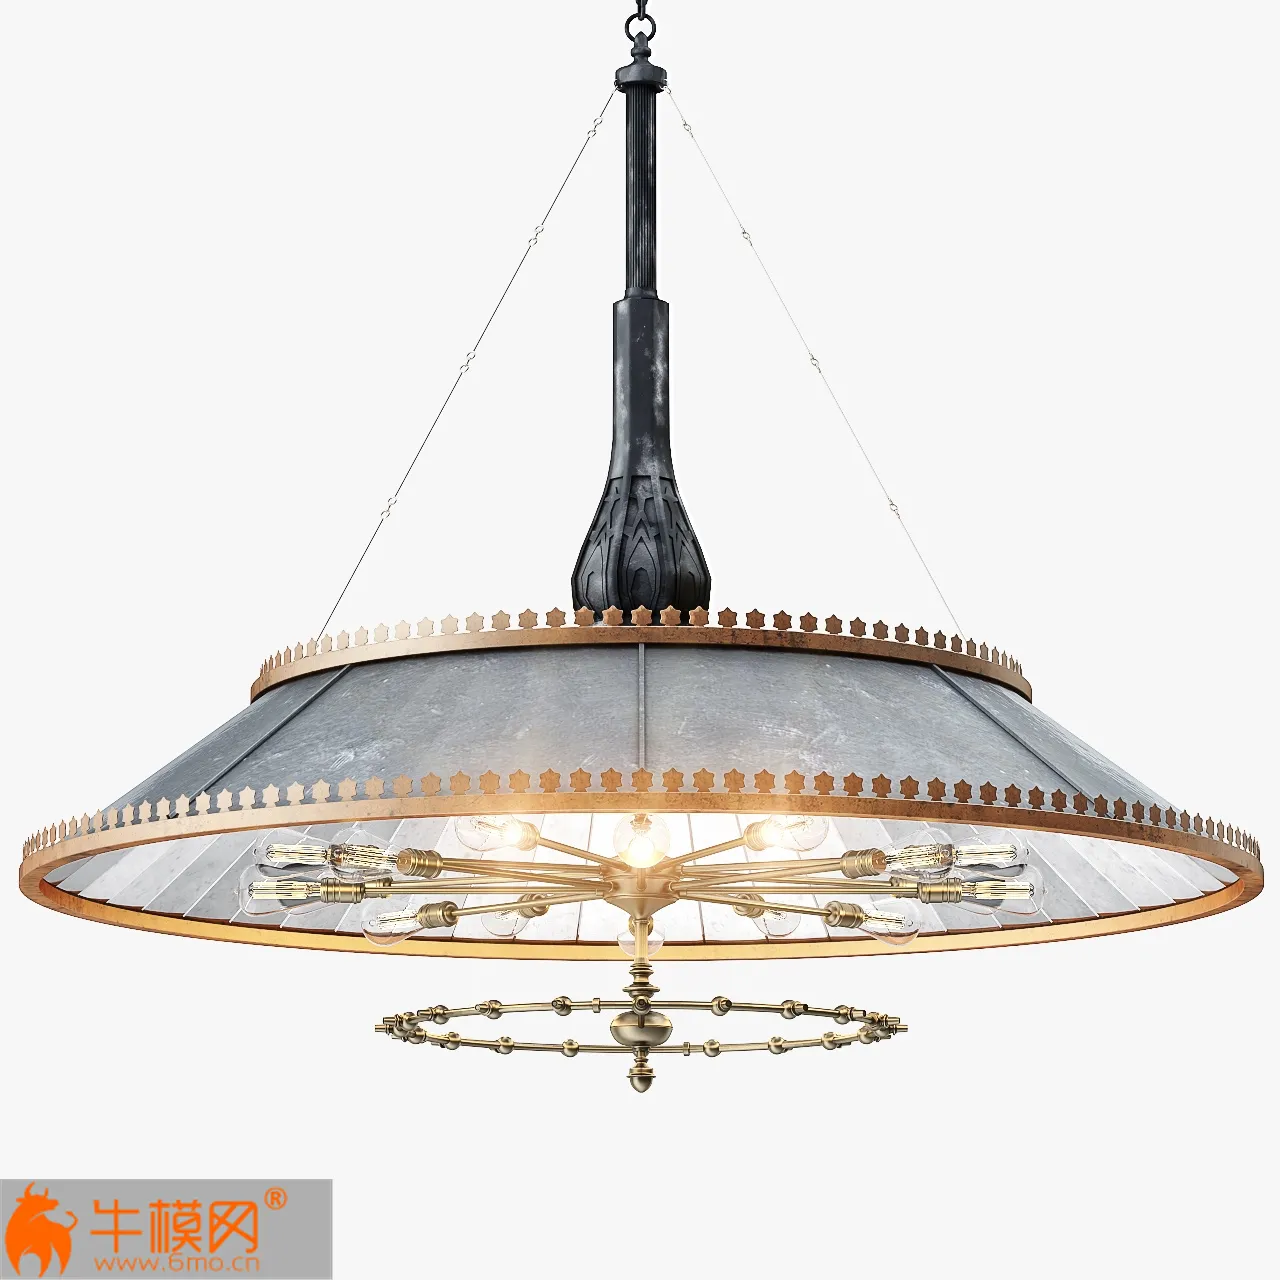 Grand 1800s Wheeler Mirrored Lamp – 5304